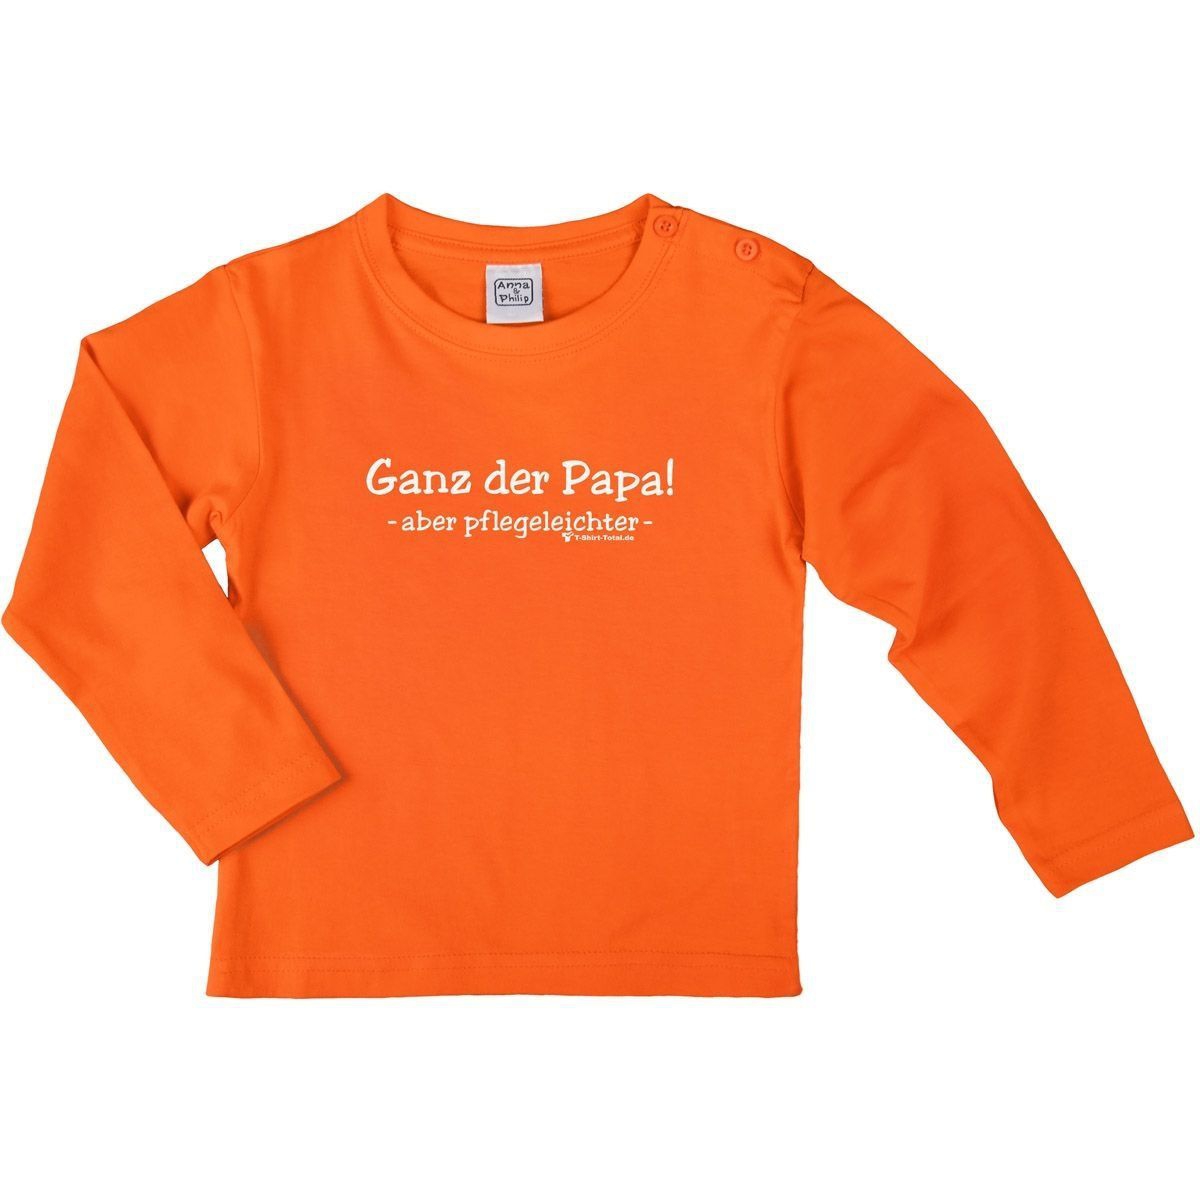 Ganz der Papa Kinder Langarm Shirt orange 110 / 116